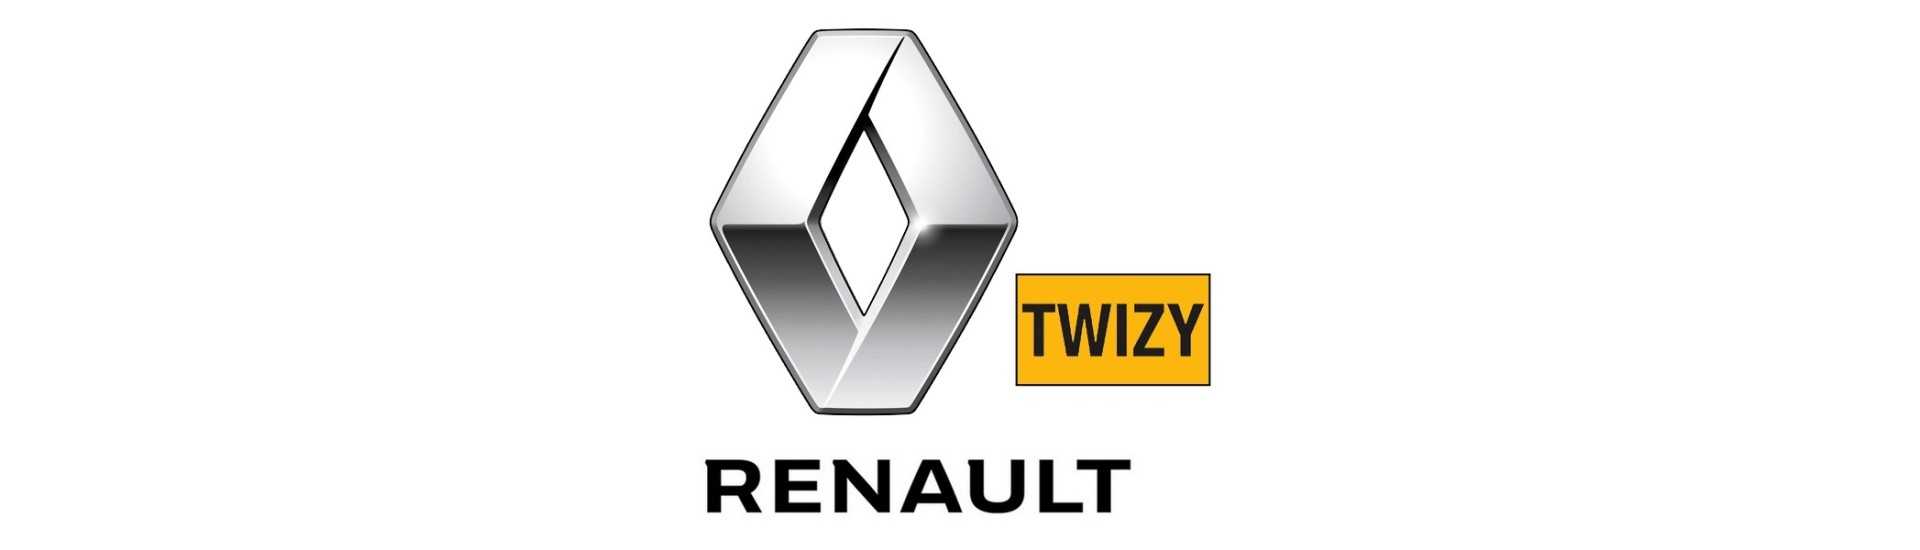 Voo ao melhor preço para o carro sem licença Renault Twizy